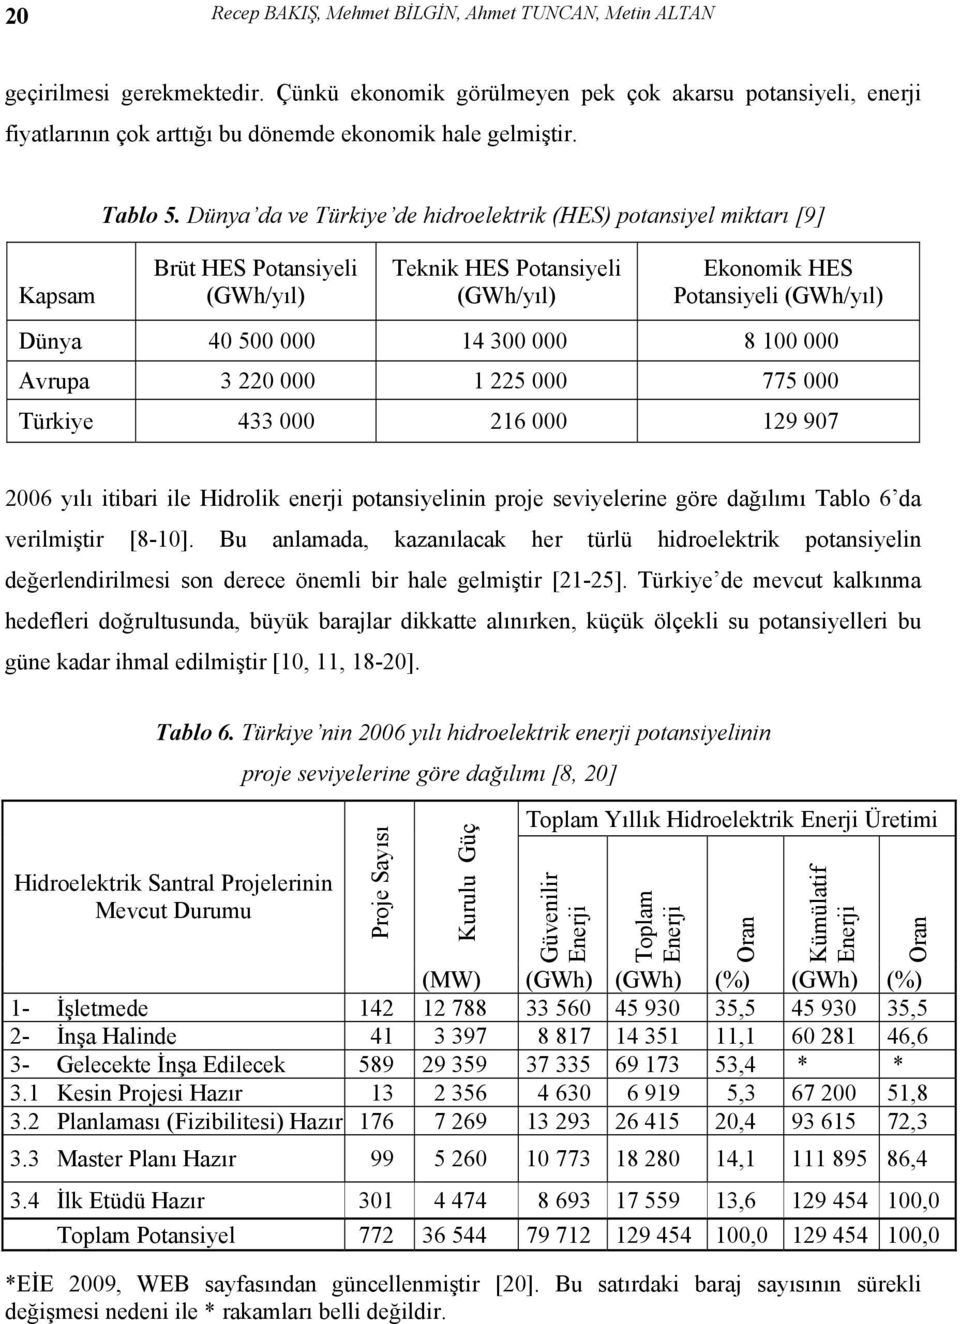 Dünya da ve Türkiye de hidroelektrik (HES) potansiyel miktarı [9] Kapsam Brüt HES Potansiyeli (GWh/yıl) Teknik HES Potansiyeli (GWh/yıl) Ekonomik HES Potansiyeli (GWh/yıl) Dünya 40 500 000 14 300 000